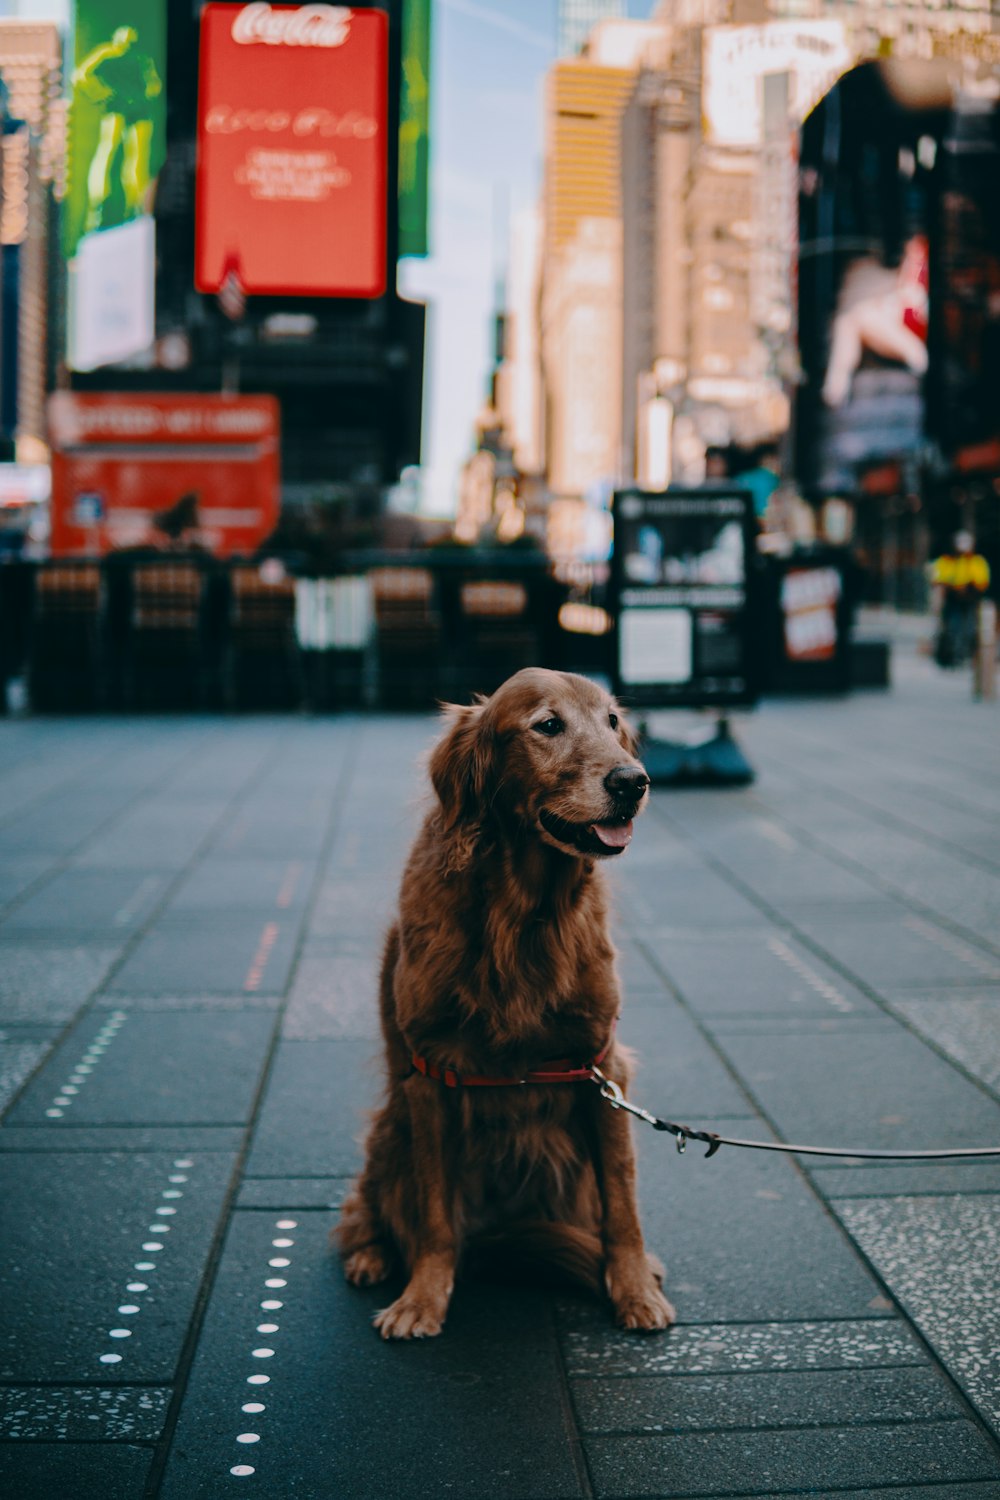 brauner, langhaariger Hund sitzt tagsüber auf dem Bürgersteig